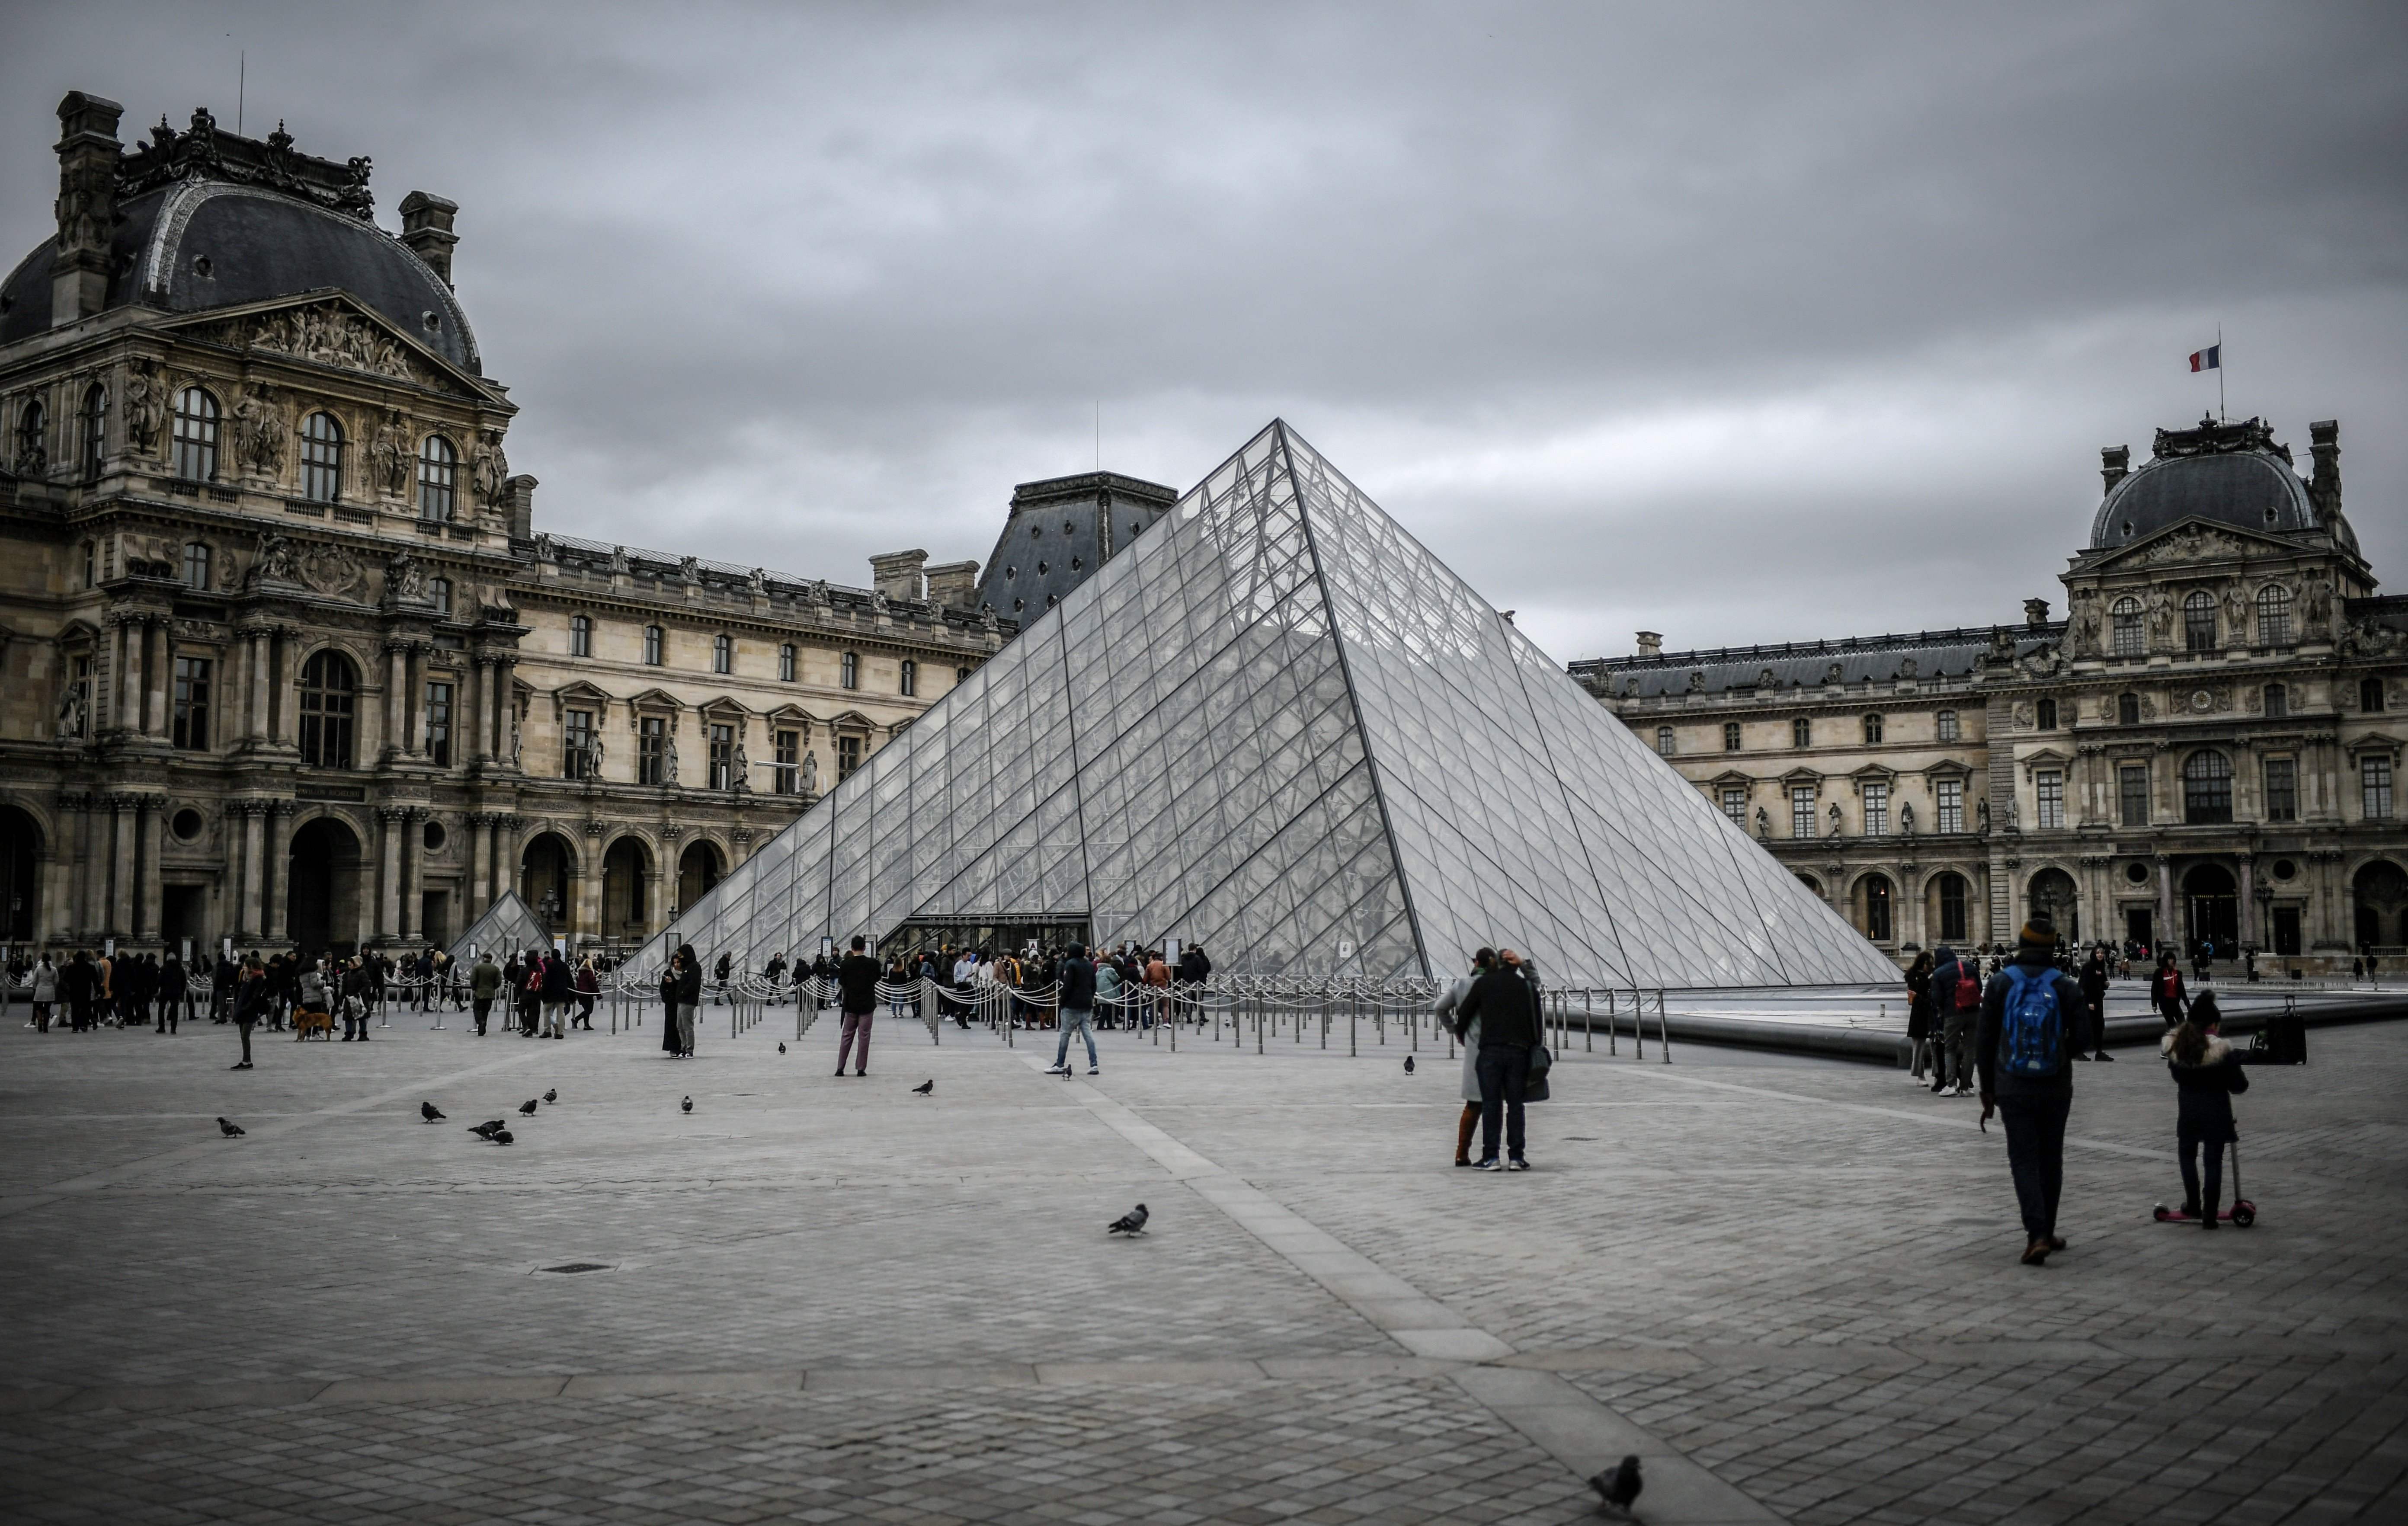 Autoridades del museo, el más visitado del mundo, decidieron cerrar hasta nuevo aviso. (Foto Prensa Libre: AFP)